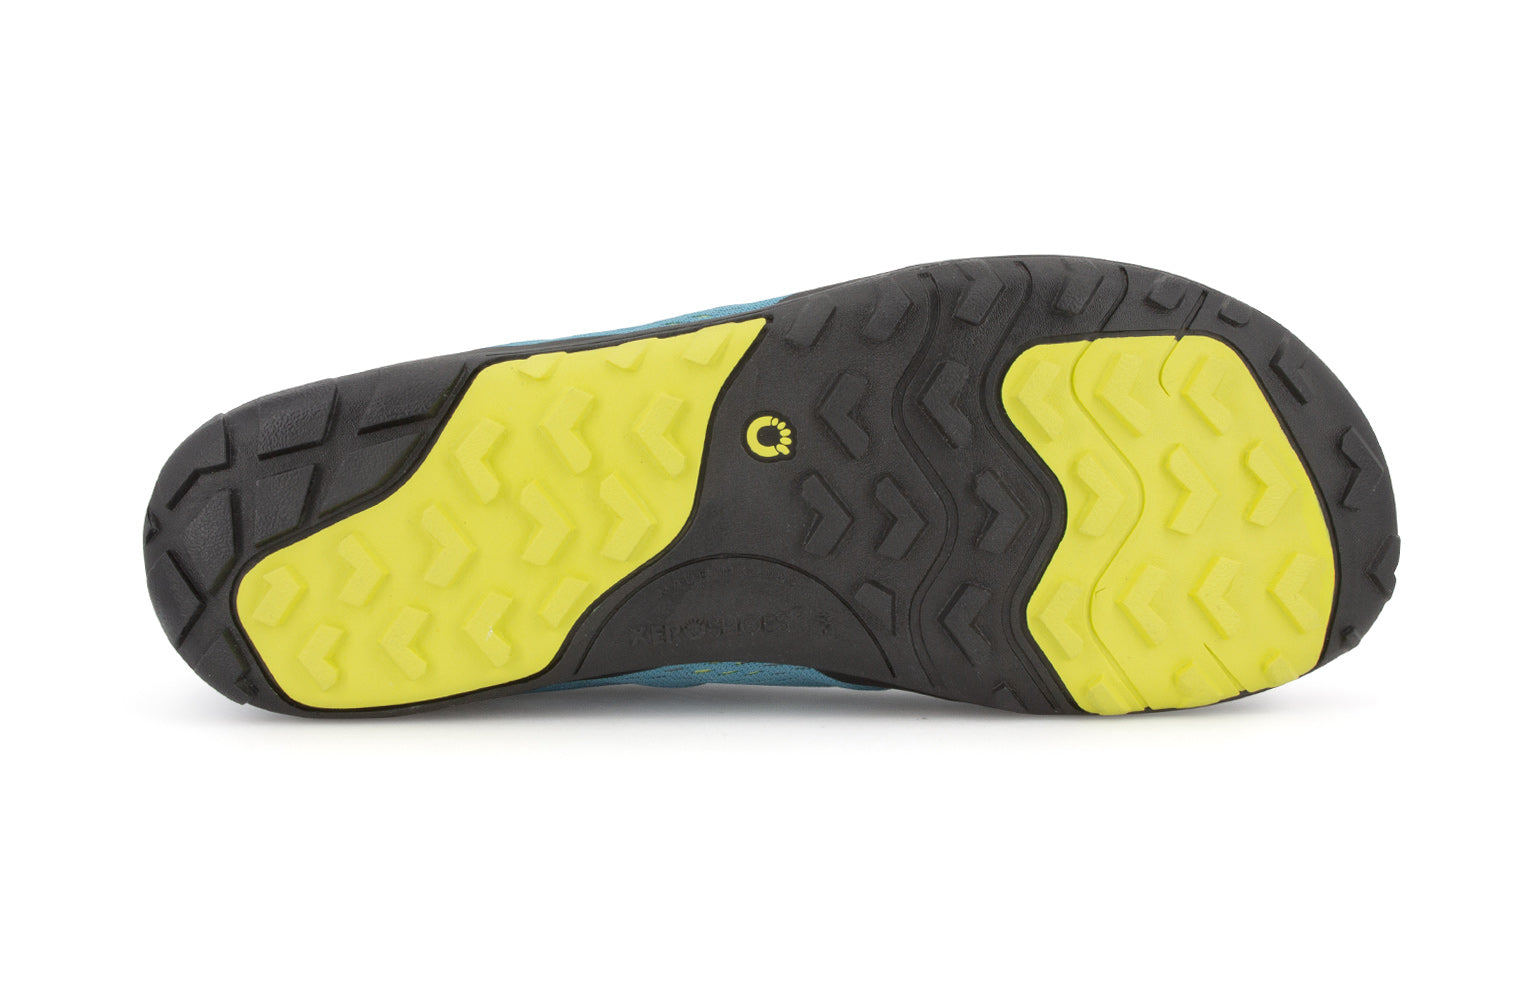 Xero Shoes Aqua X Sport barfods vand træningssko til mænd i farven surf, saal